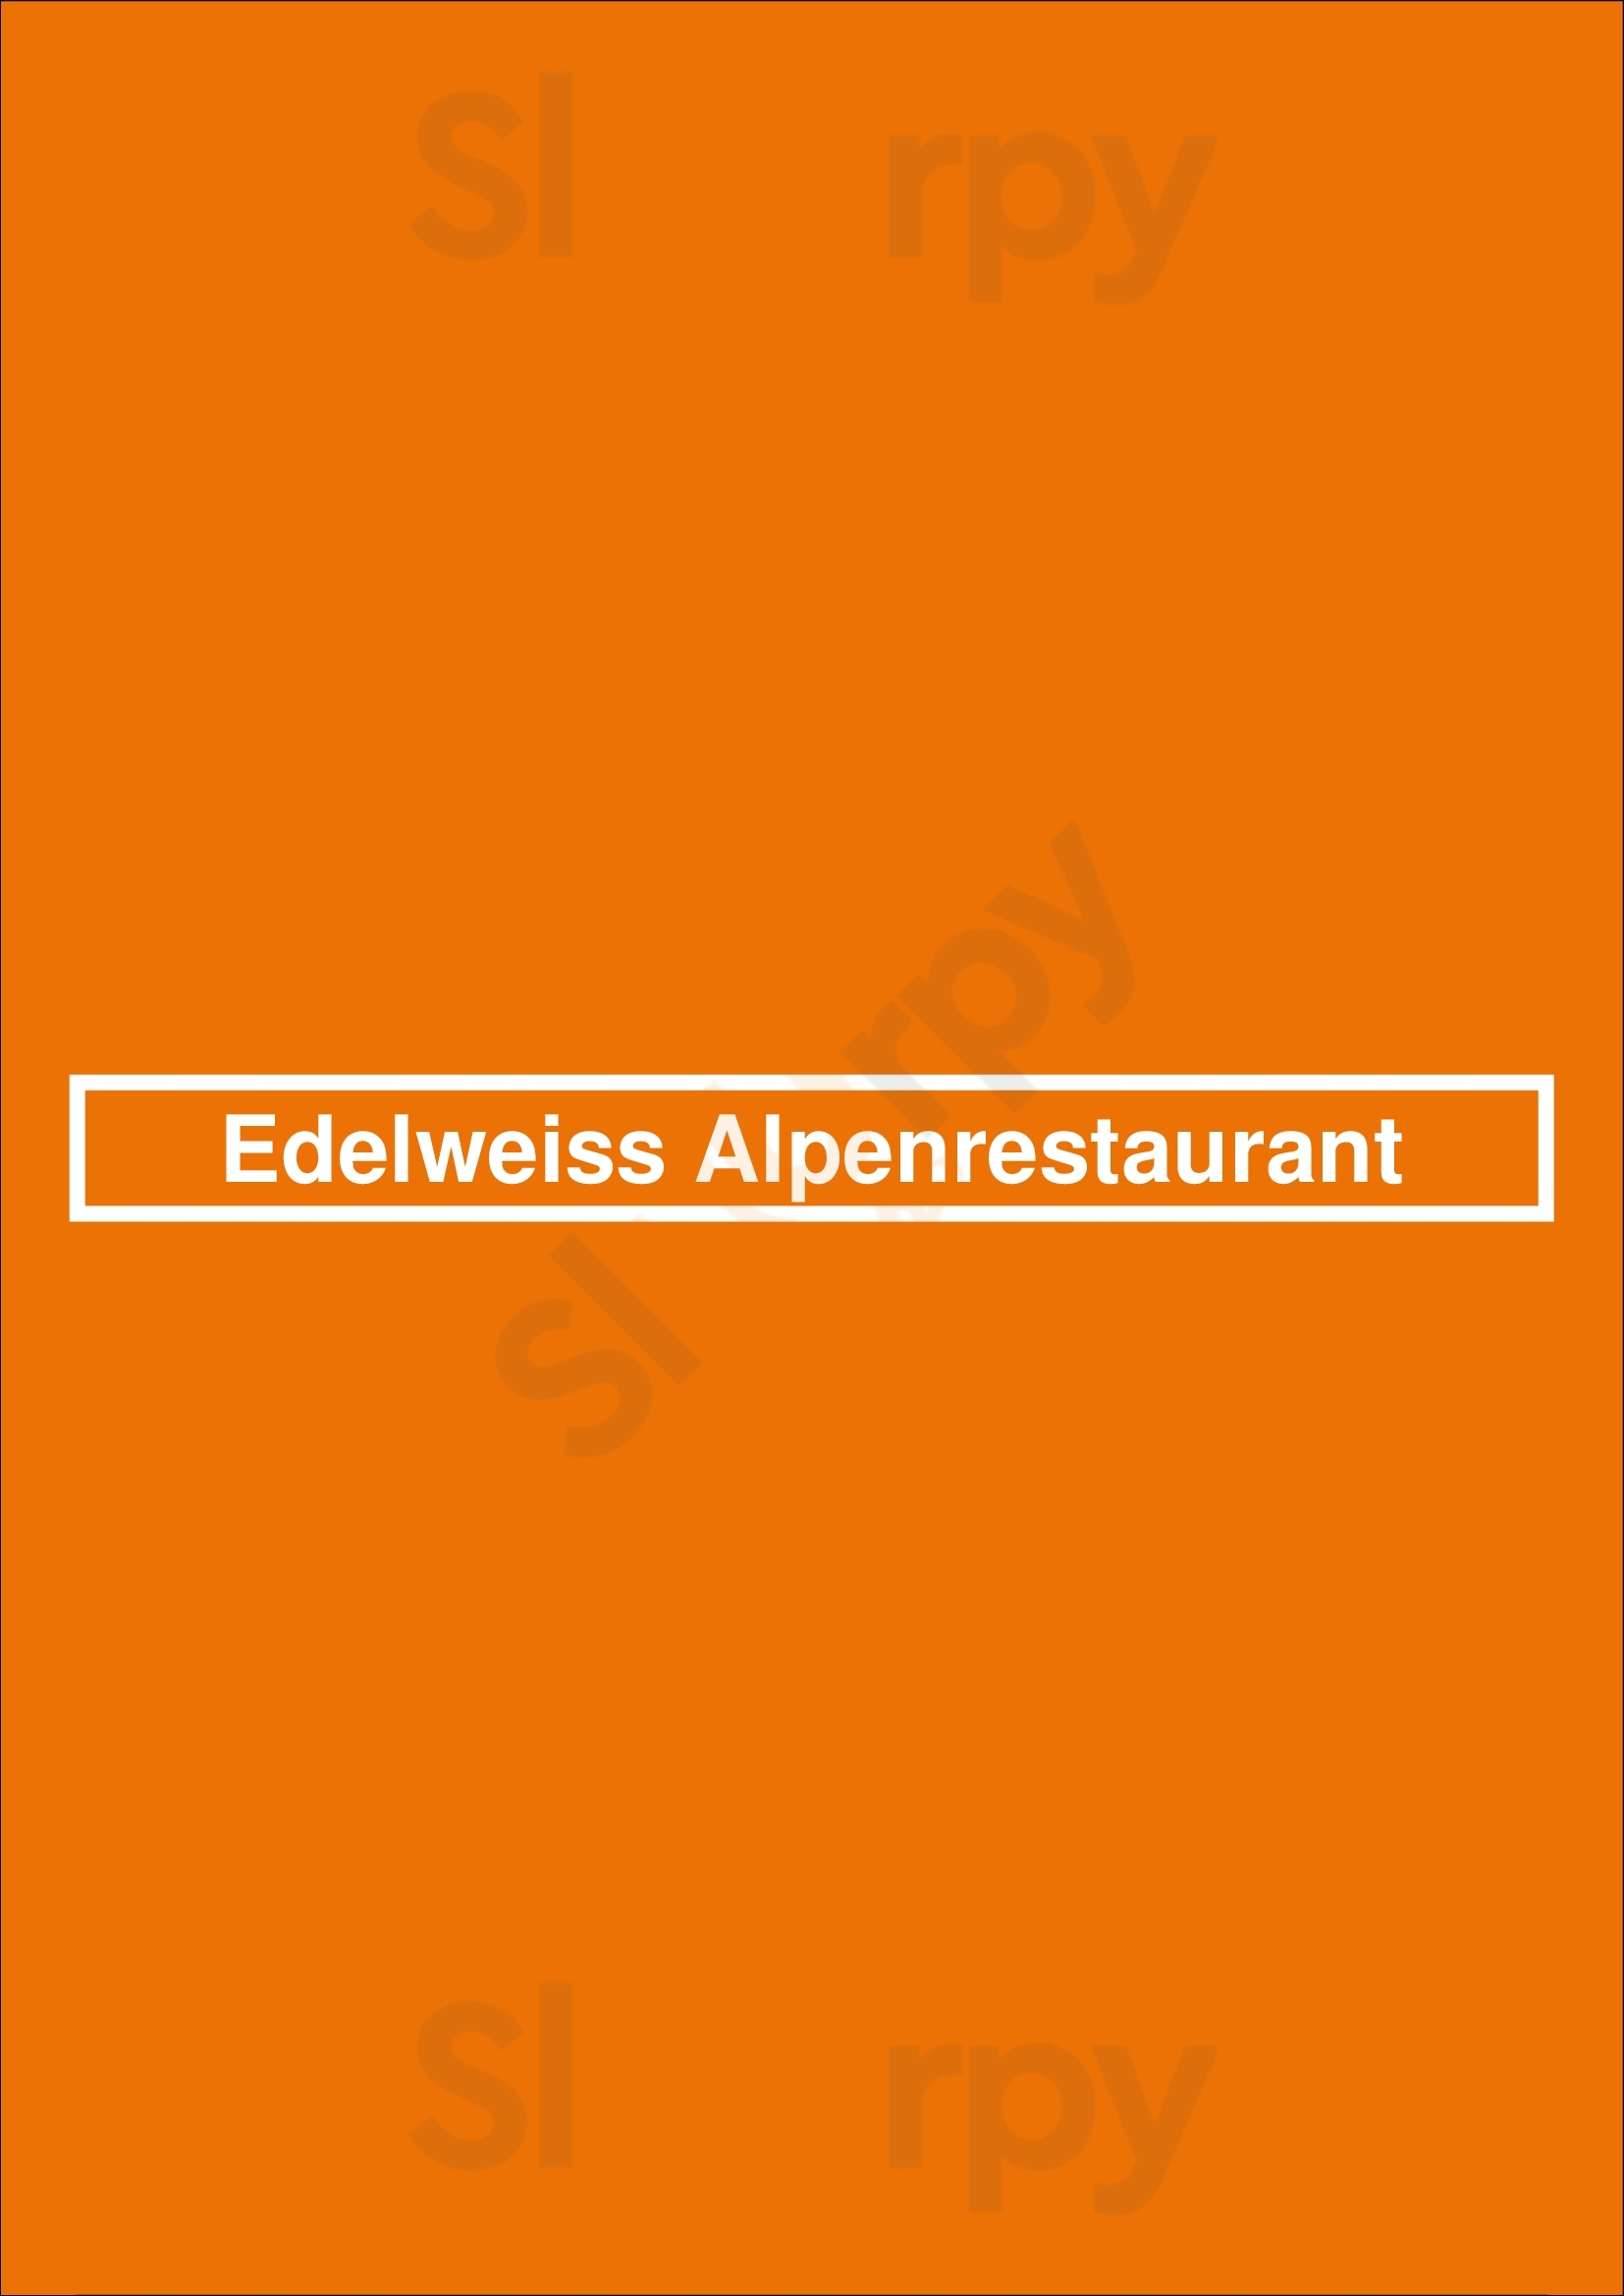 Edelweiss Alpenrestaurant Dresden Menu - 1